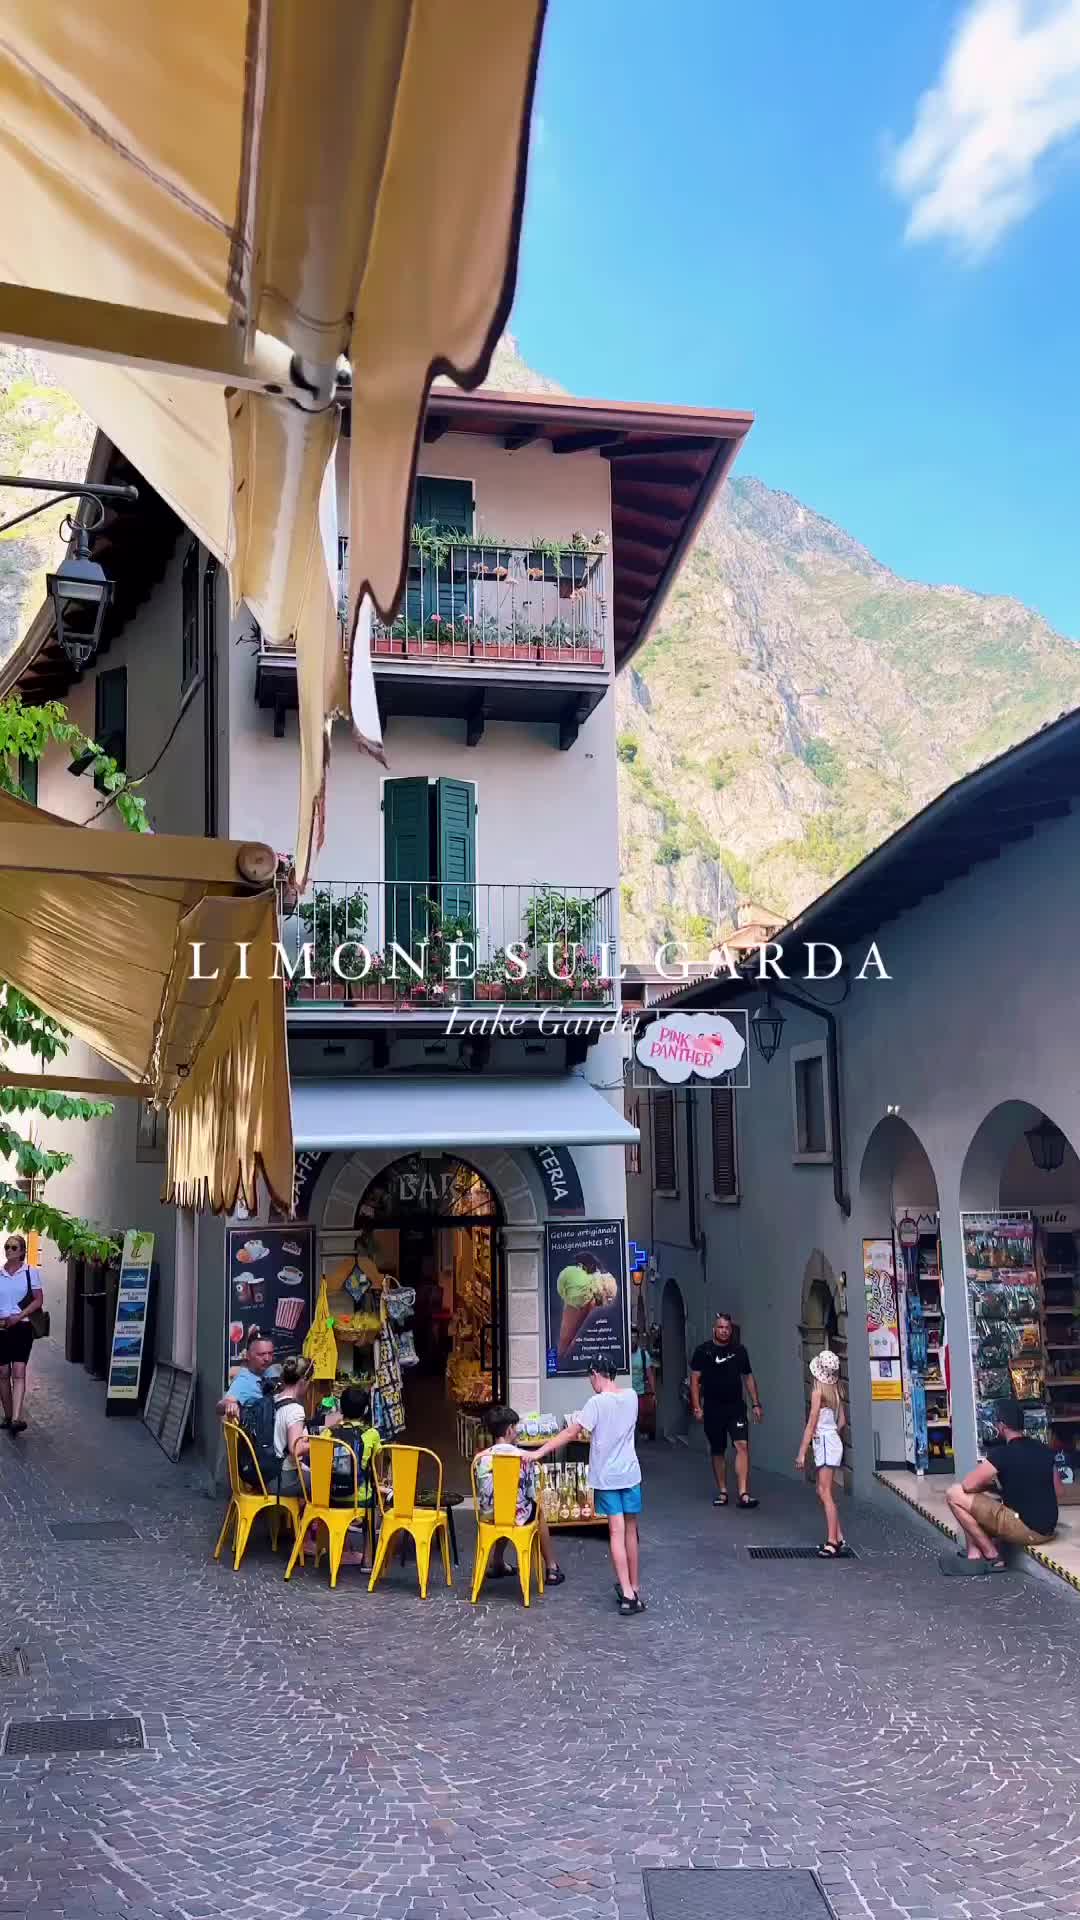 A dream place on Lake Garda 🩵

#LimonesulGarda #LakeGarda #LagodiGarda #GardaLake #Italia #Italy